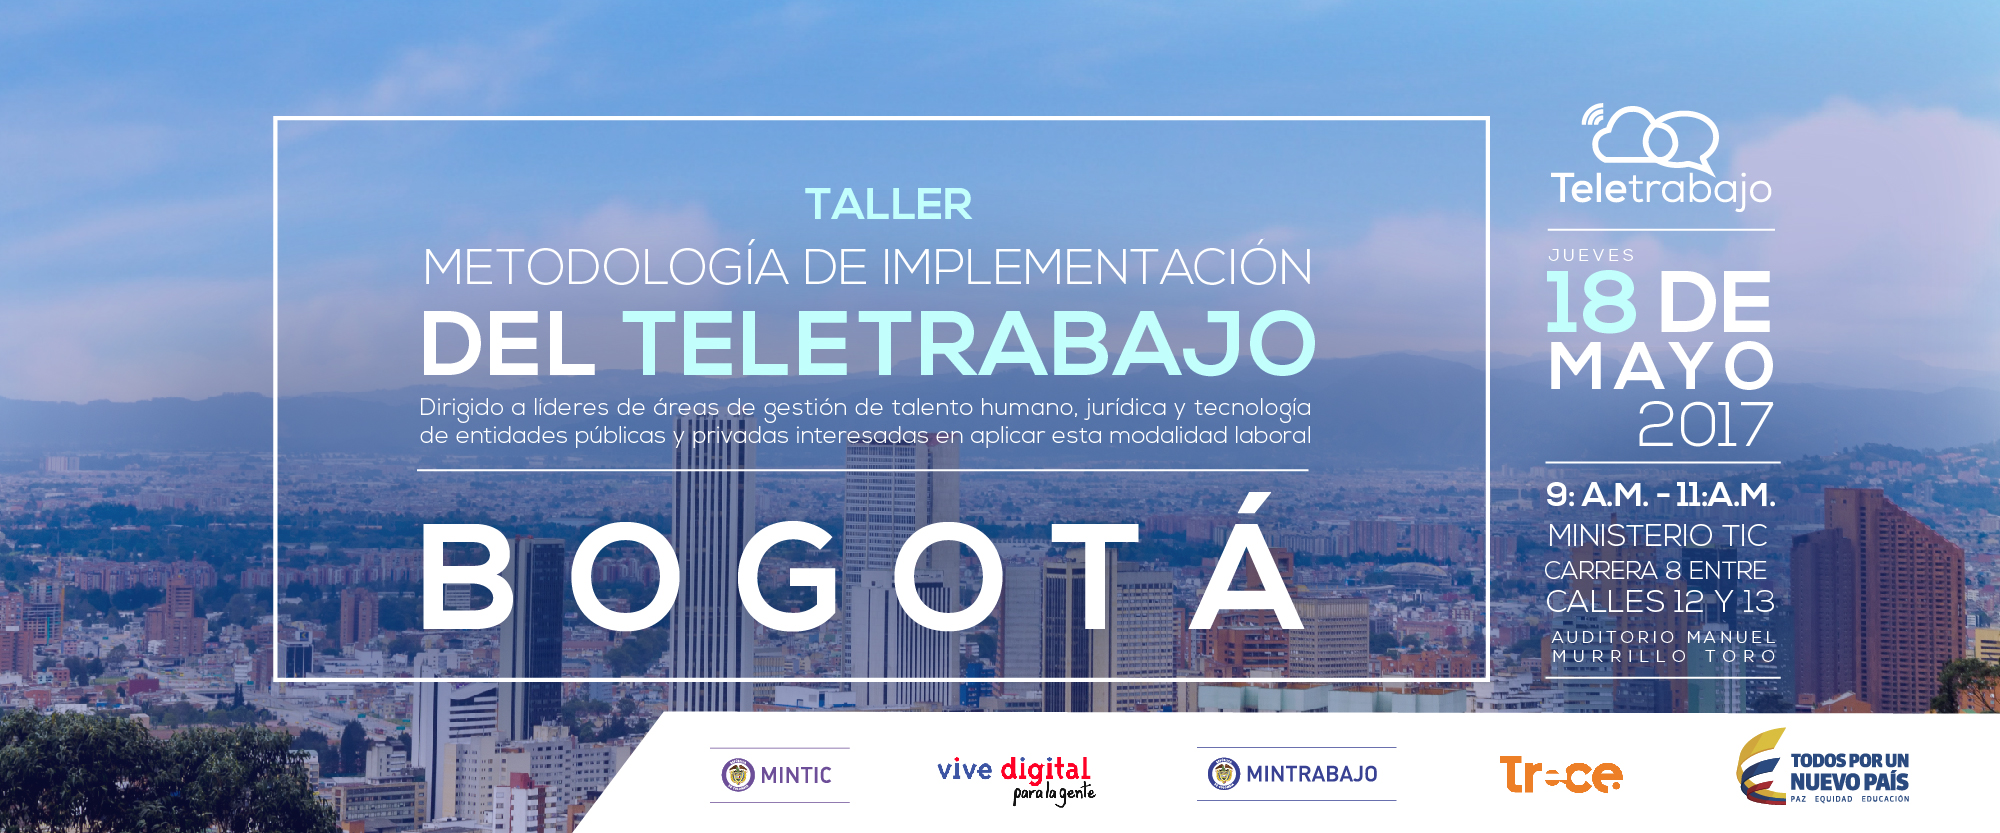 Continúa el ciclo de Talleres de Teletrabajo en Bogotá